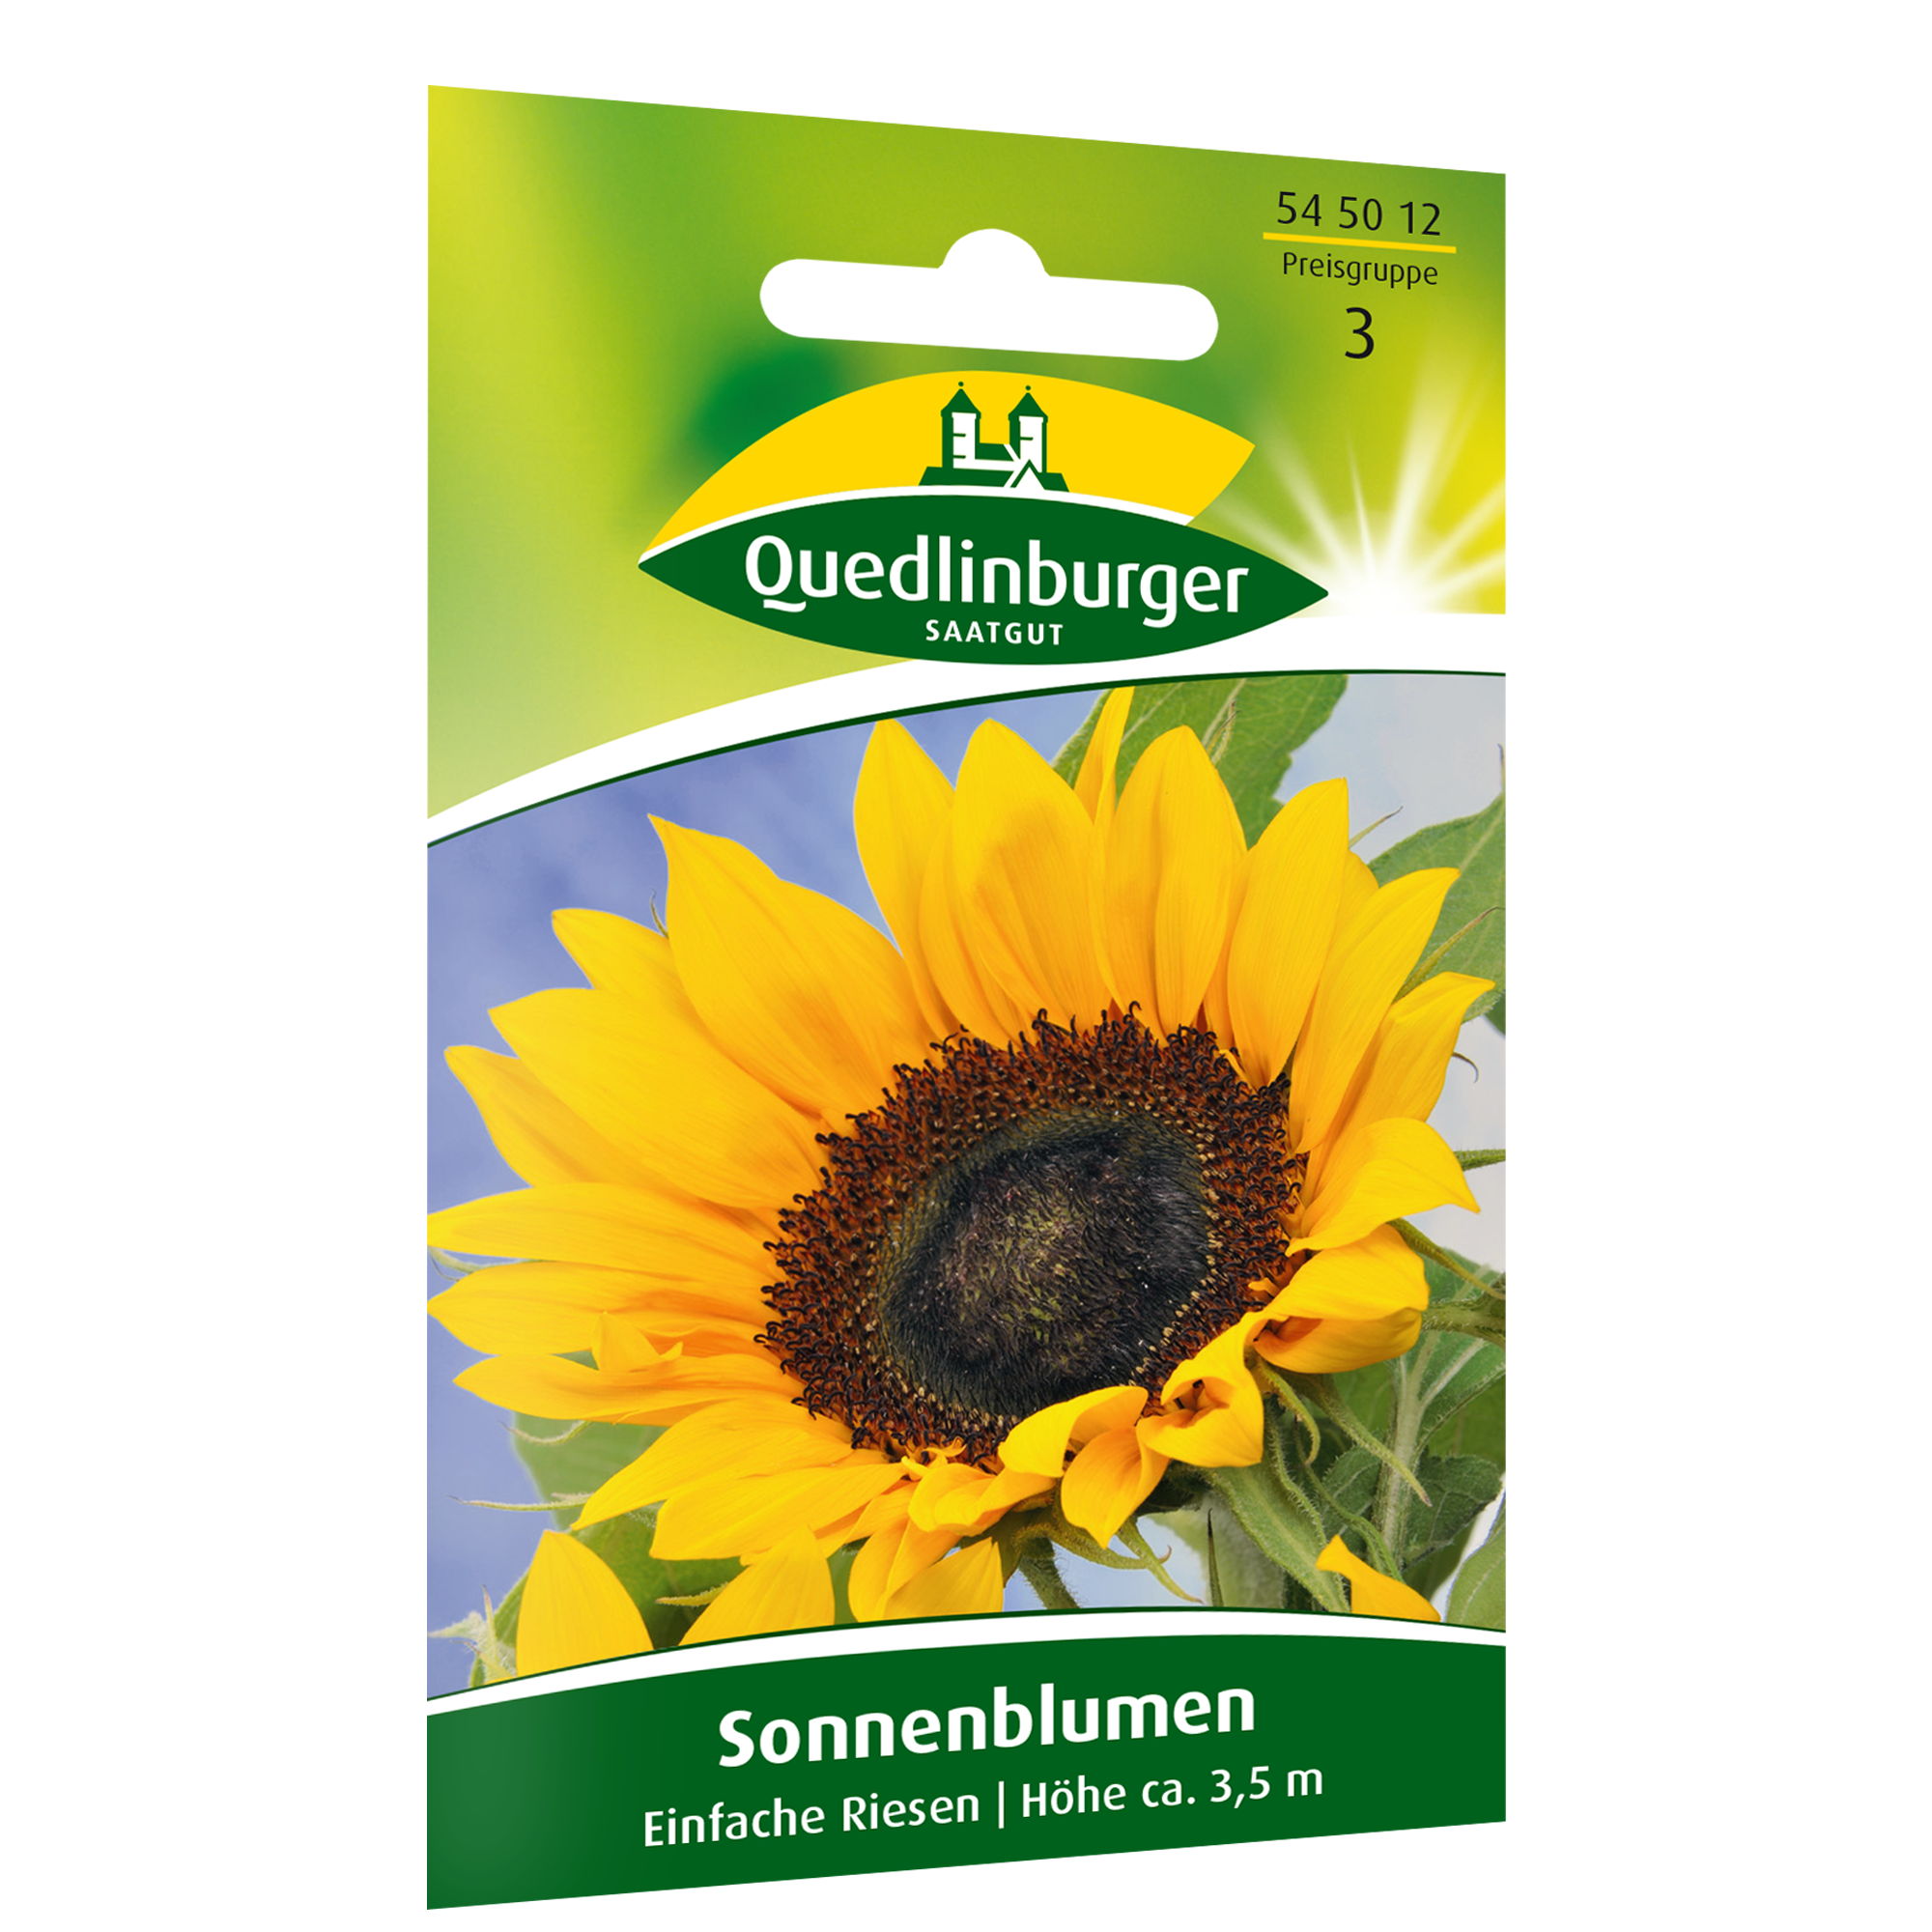 Sonnenblumen 'Einfache Riesen' + product picture